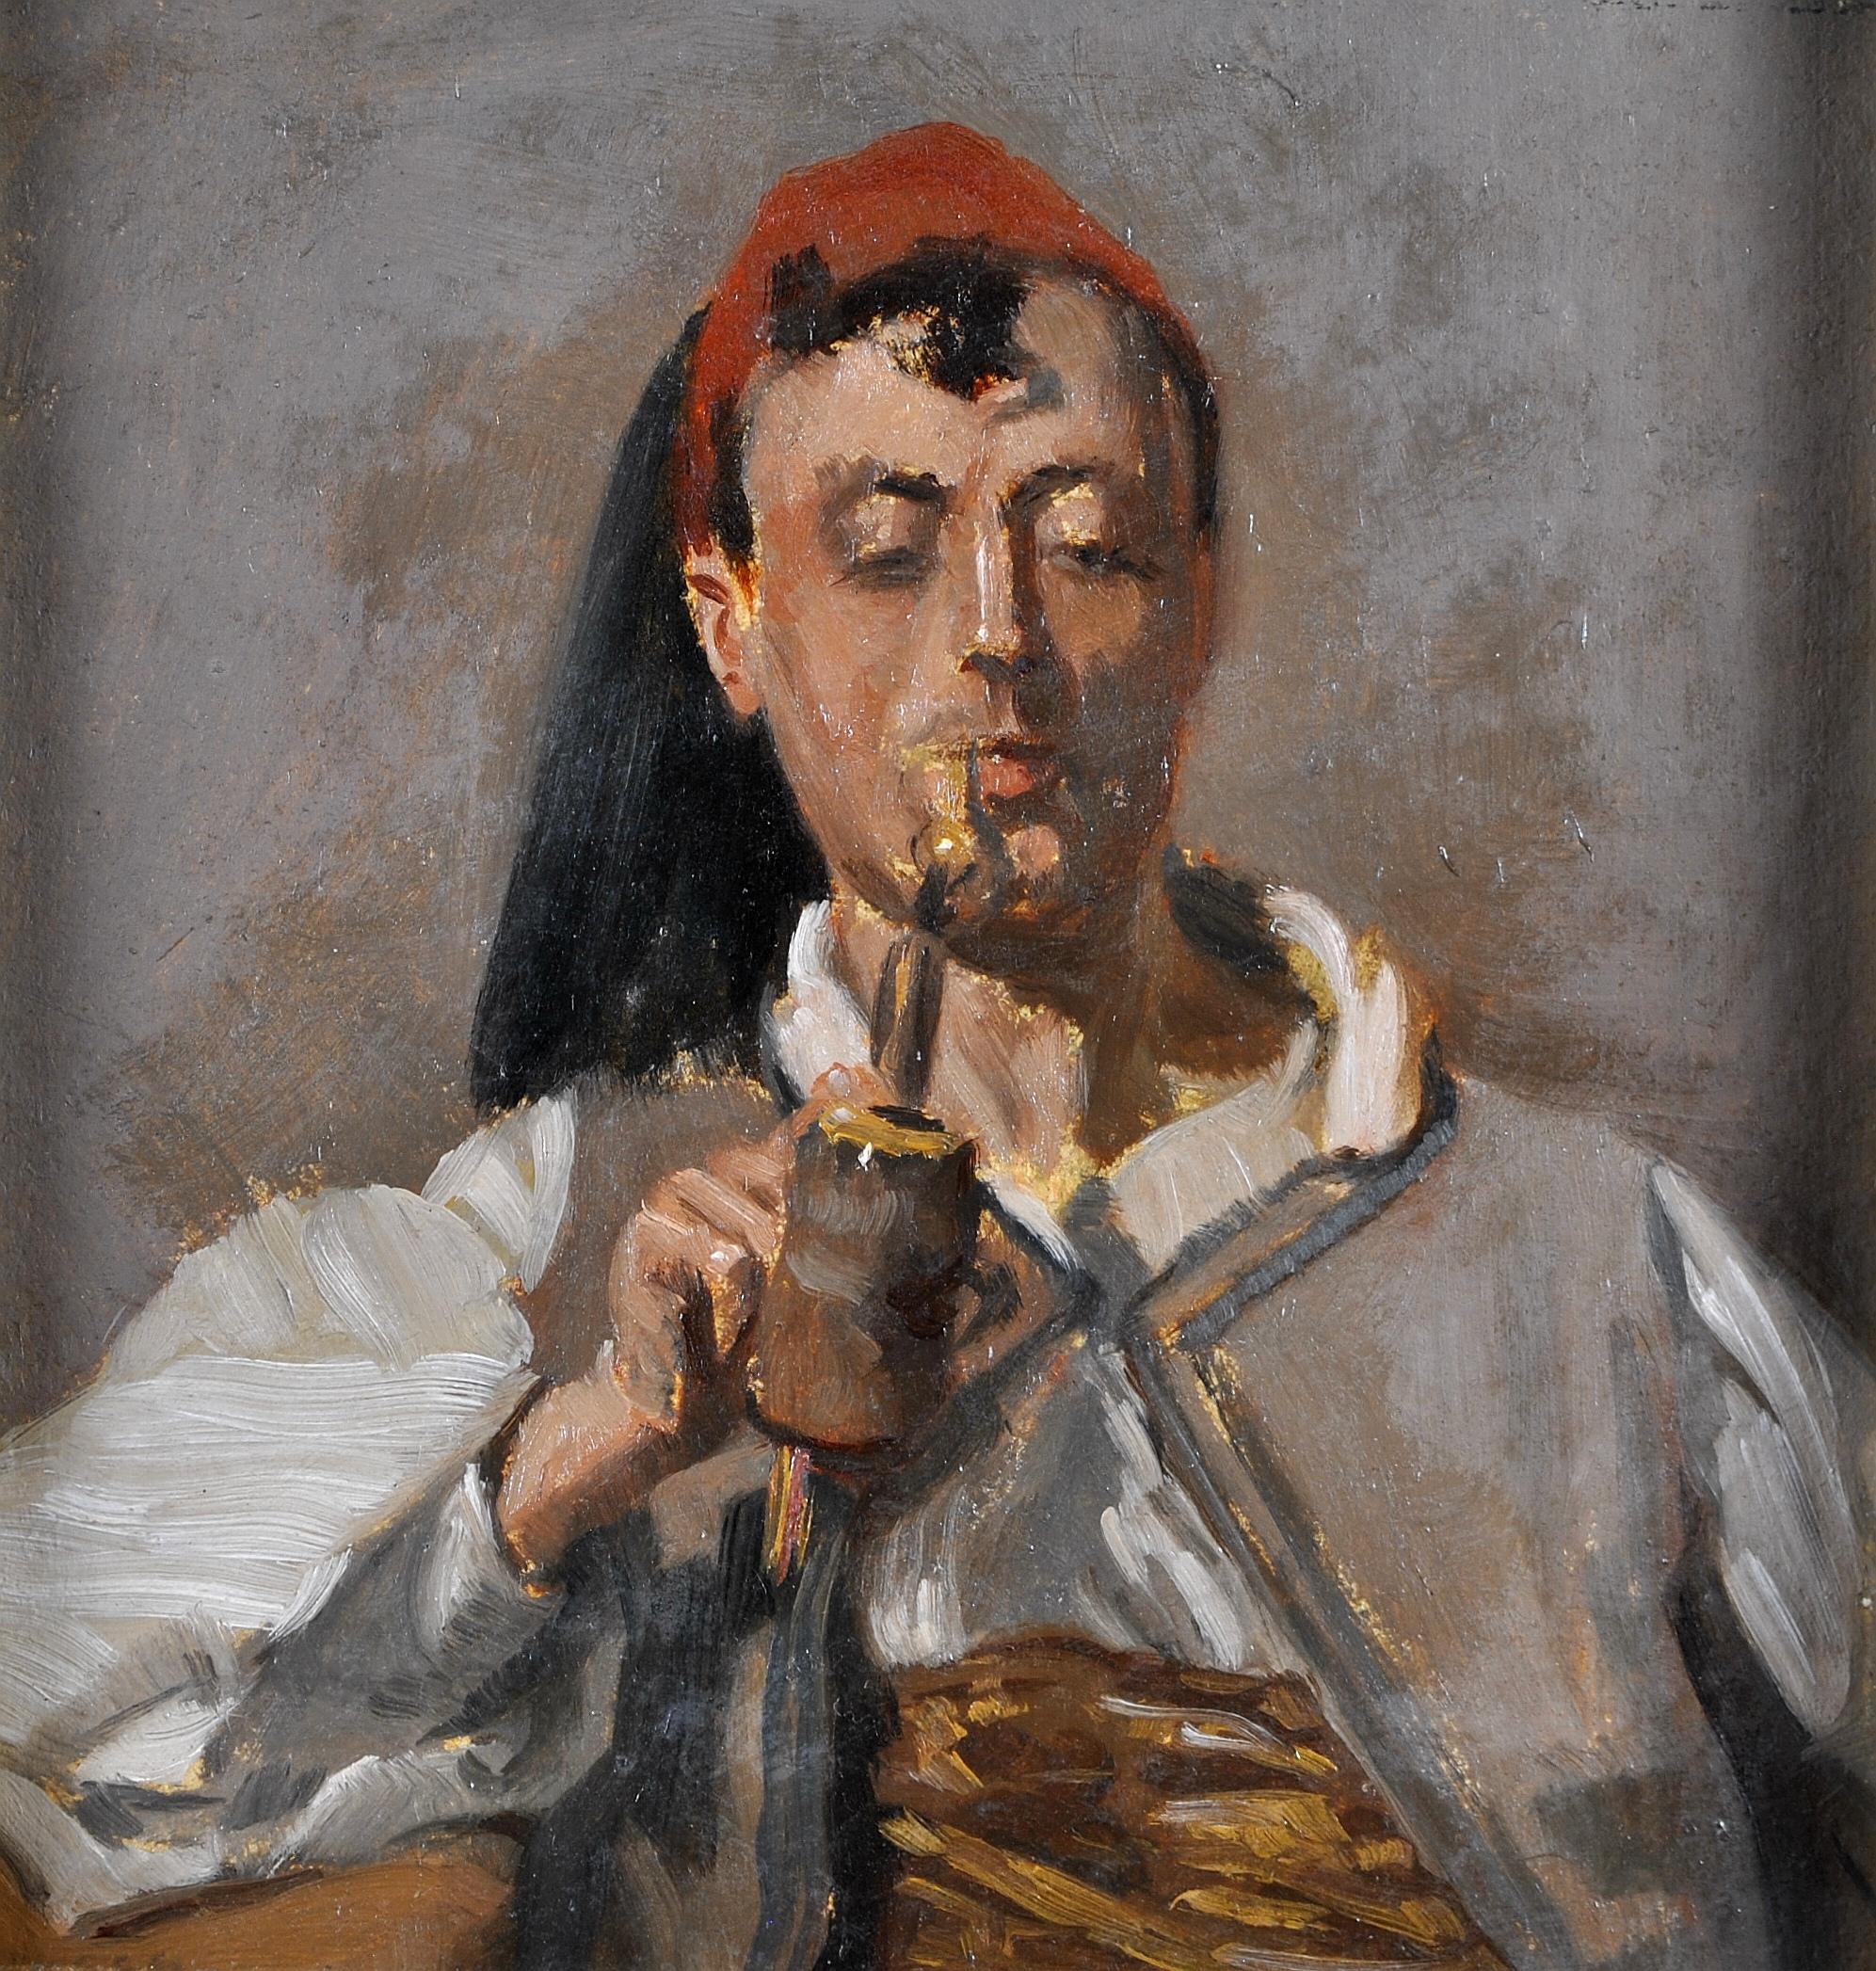 Dieses Ölgemälde aus dem späten 19. oder frühen 20. Jahrhundert stellt einen nordafrikanischen Mann dar, der eine große Pfeife raucht. Ein sehr gut ausgeführtes Werk in kleinem Maßstab, das in seinem ursprünglichen vergoldeten Holzrahmen präsentiert